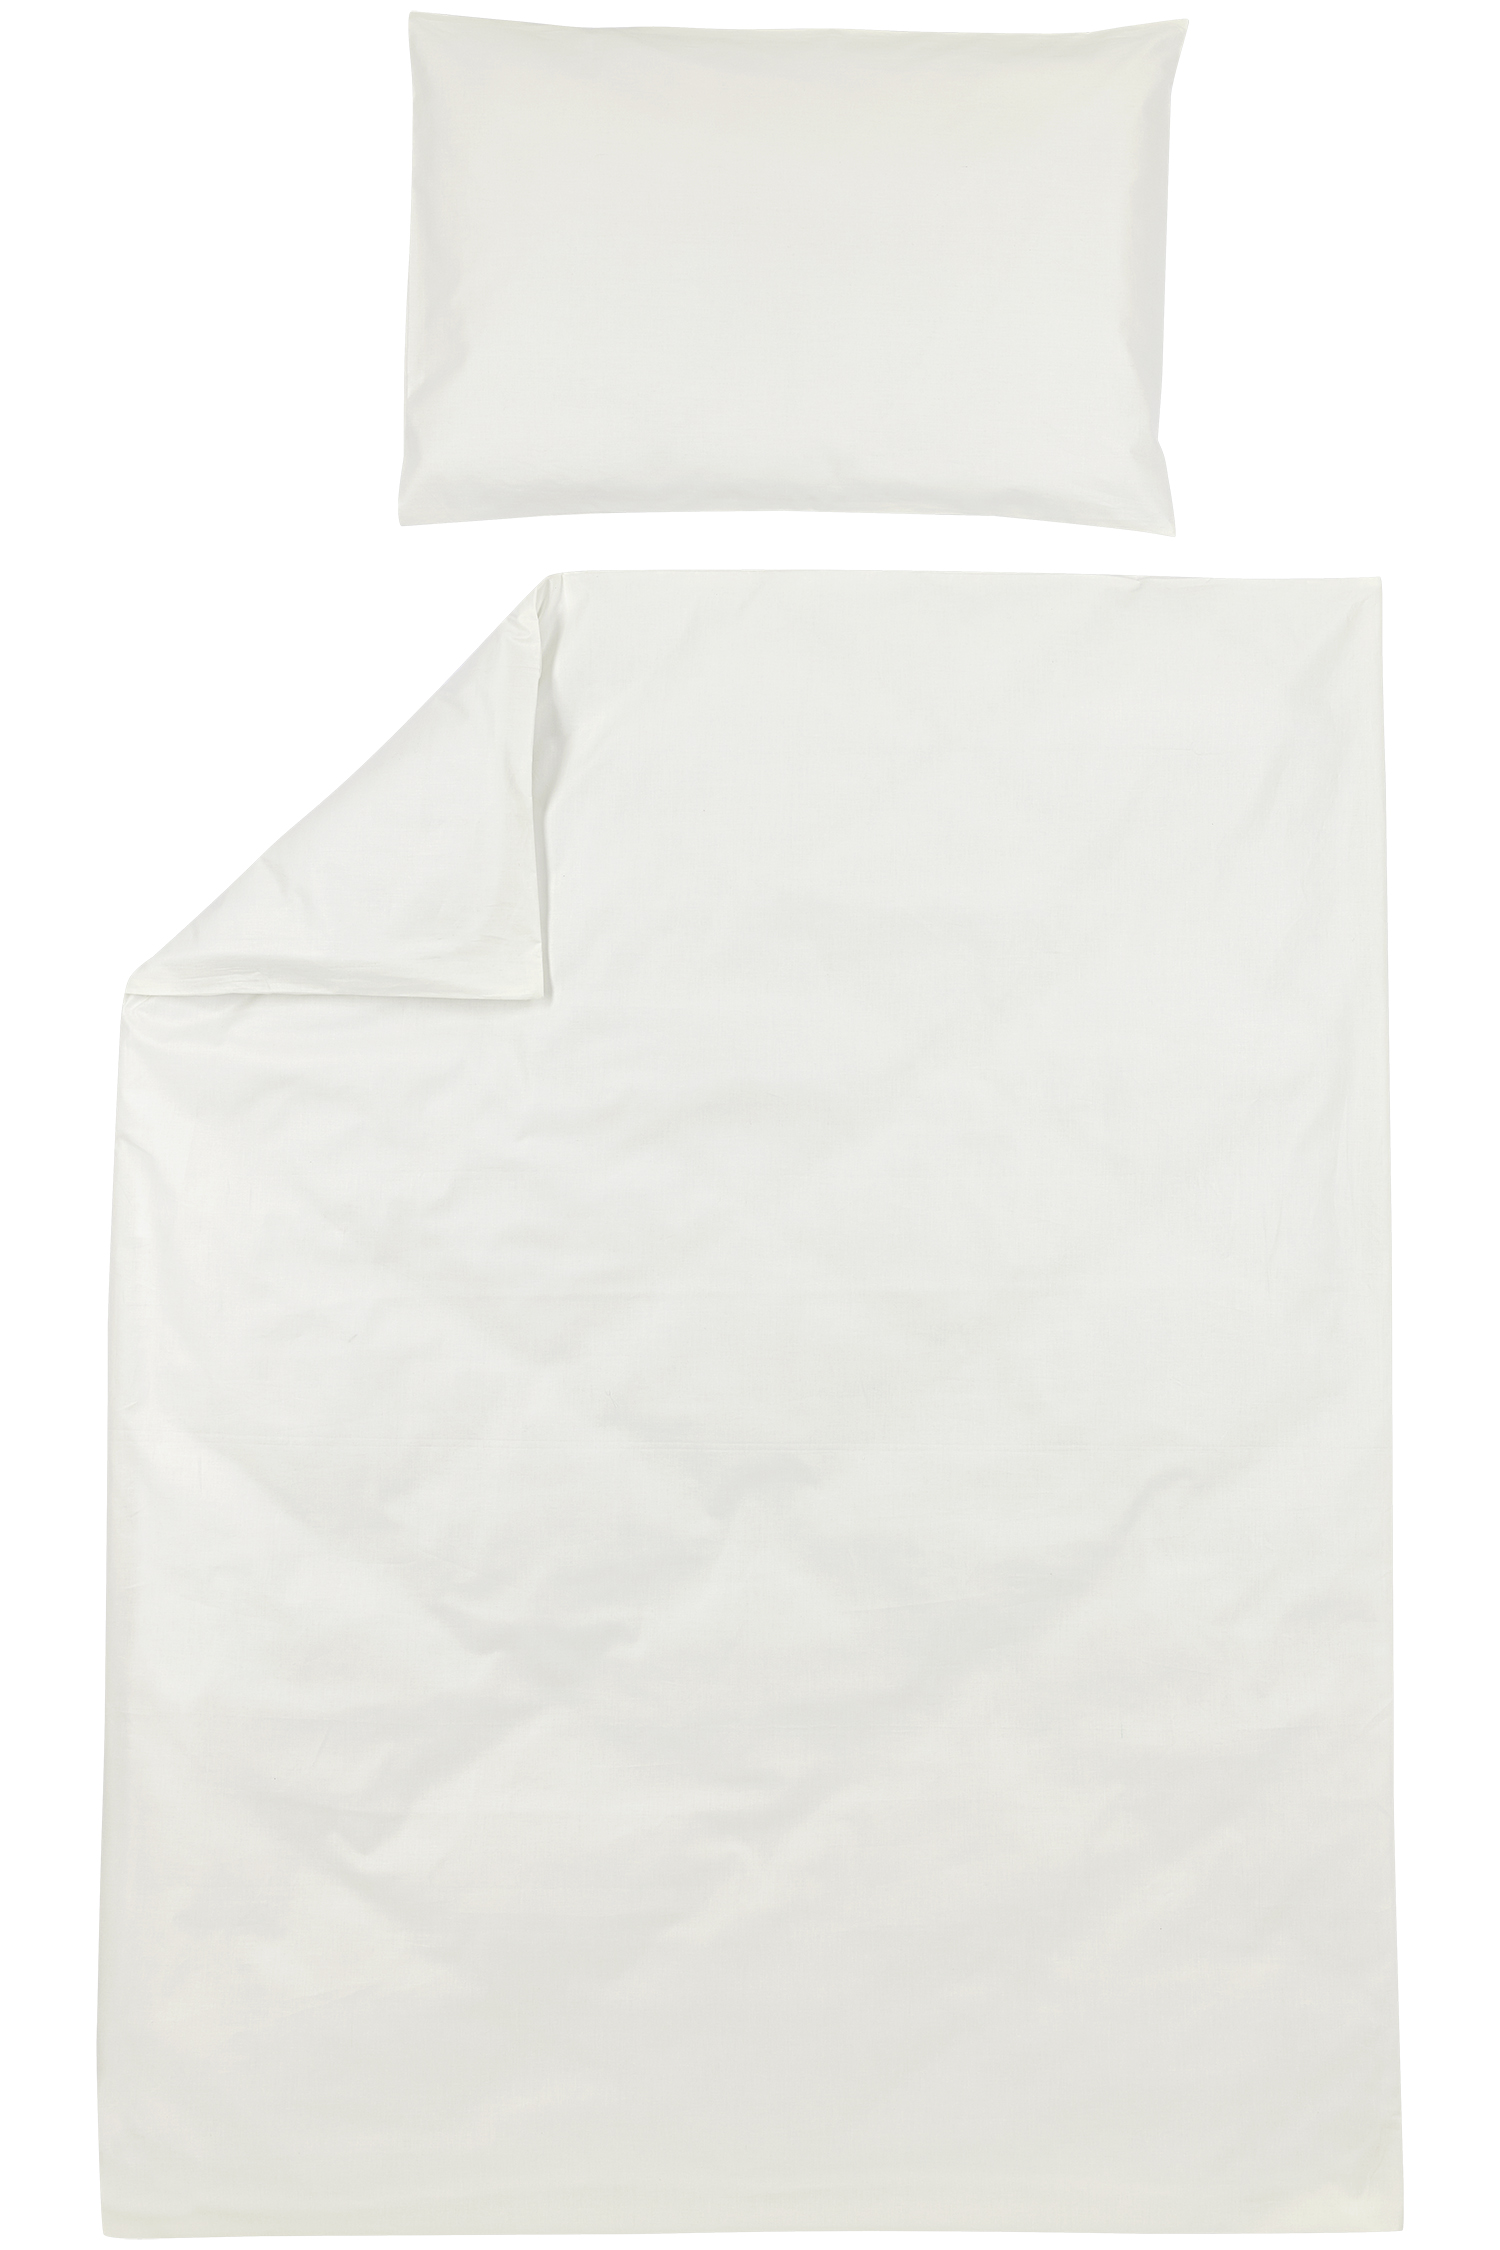 Duvet Cover + Pillowcase Uni - Offwhite - 120x150cm